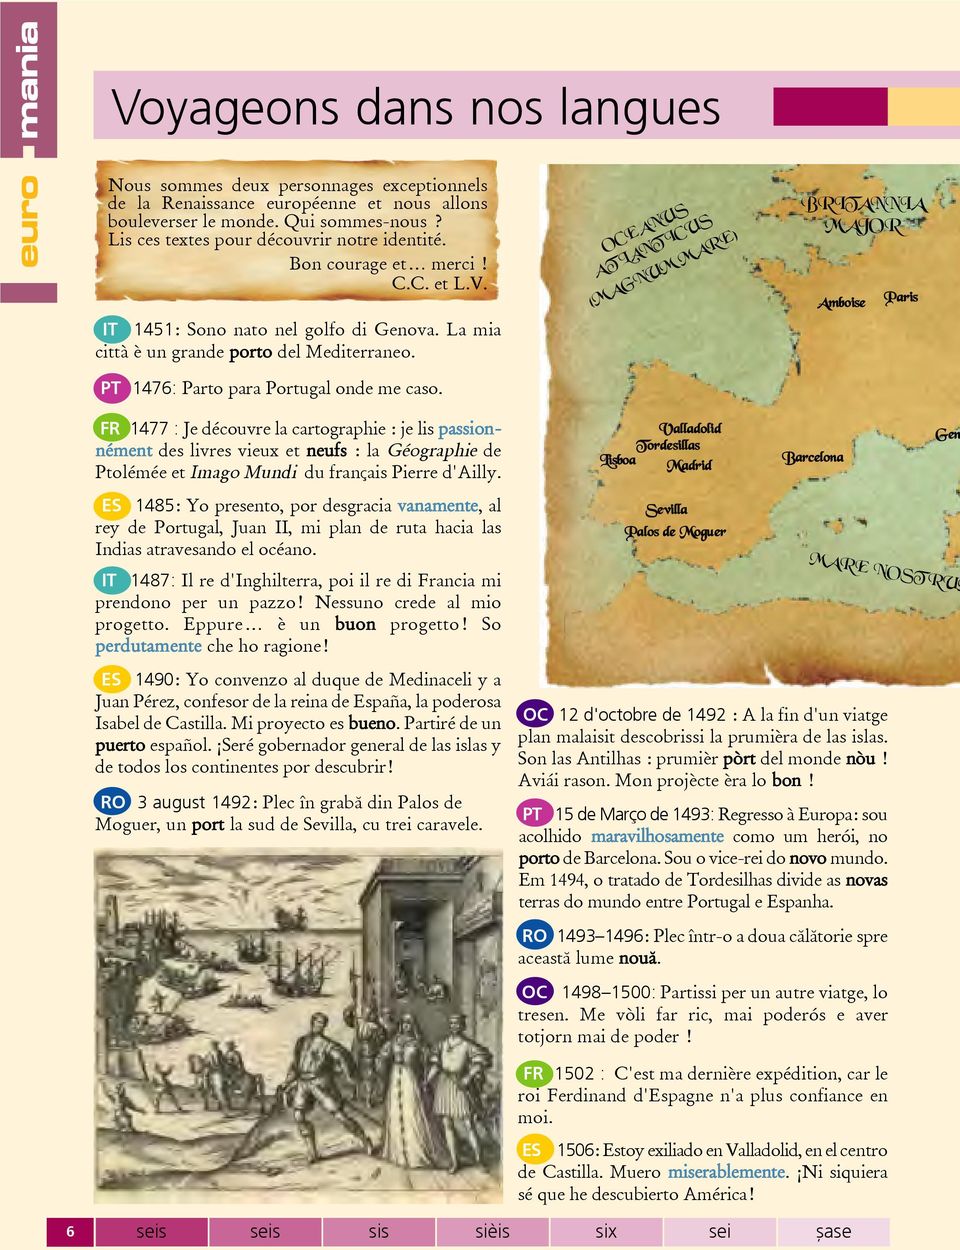 PT 1476: Parto para Portugal onde me caso. FR 1477 : Je découvre la cartographie : je lis passionnément des livres vieux et neufs : la Géographie de Ptolémée et Imago Mundi du français Pierre d'ailly.